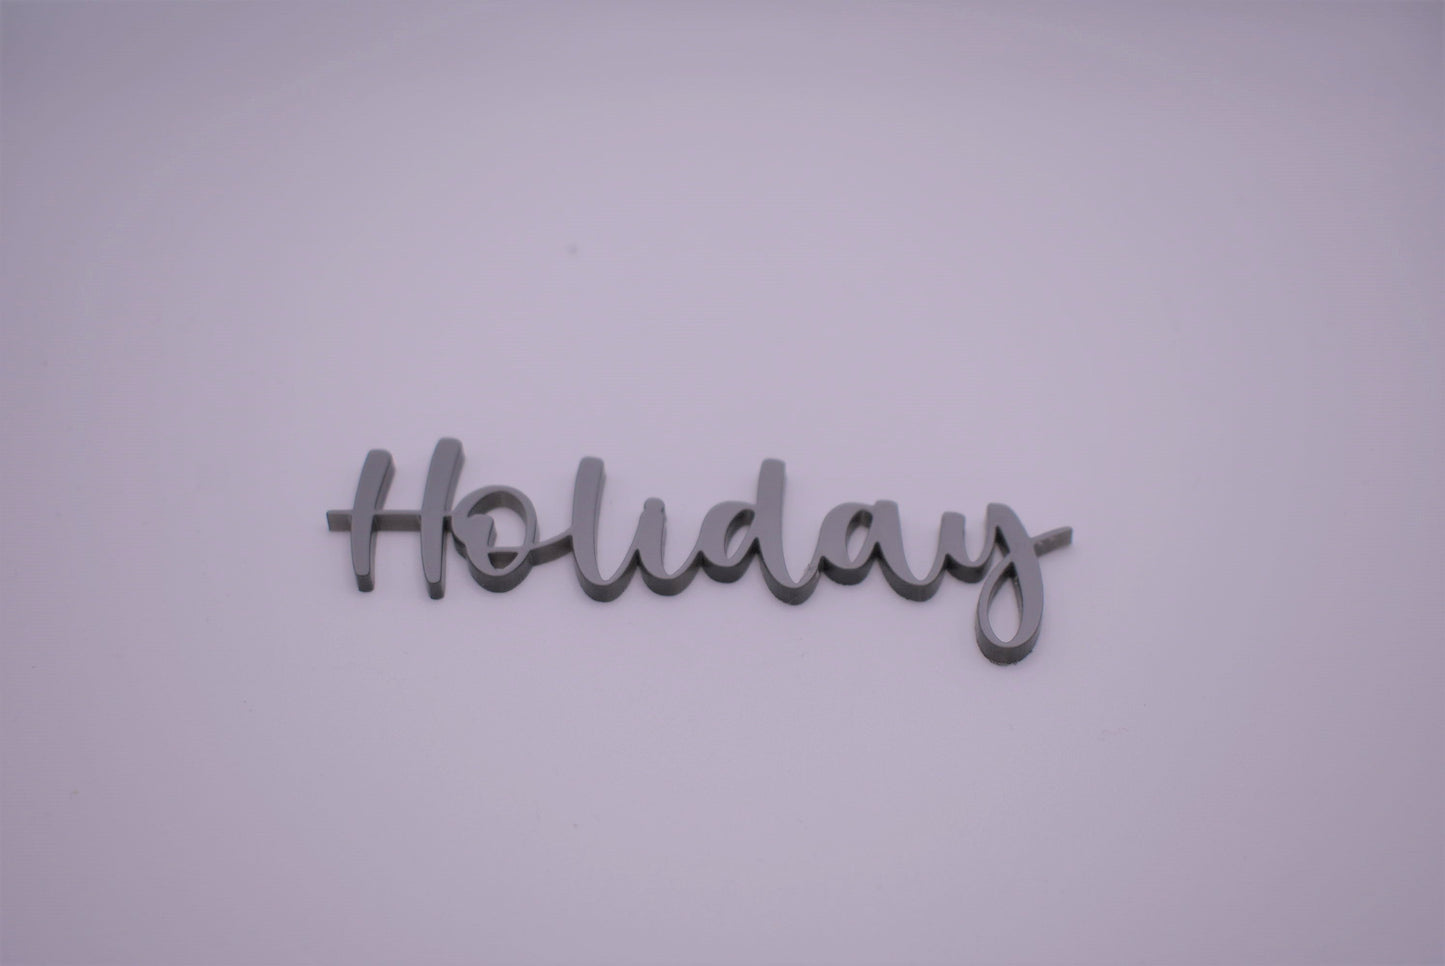 Holiday - Creative Designs By Kari